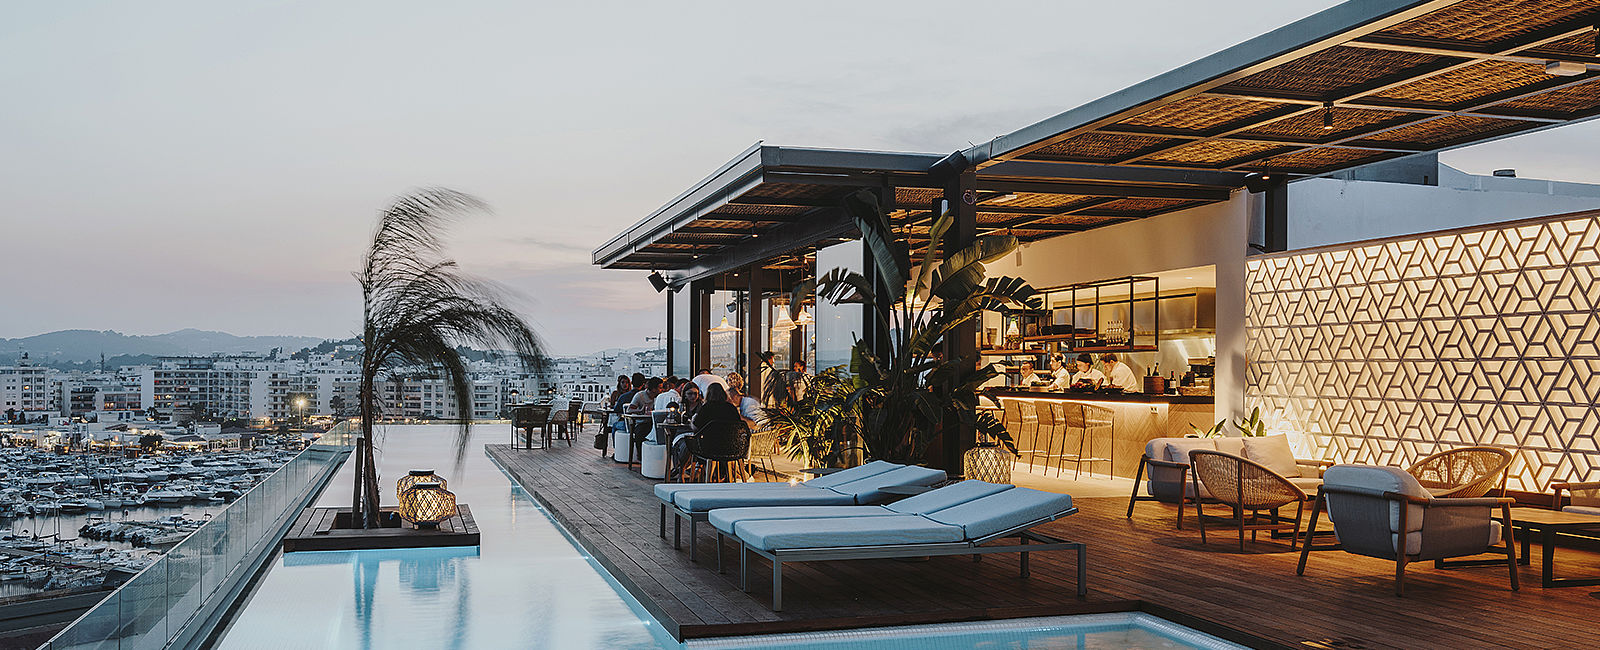 HOTEL TIPPS
 Aguas de Ibiza 
 Nachhaltiger Lifestyle auf der weißen Insel 